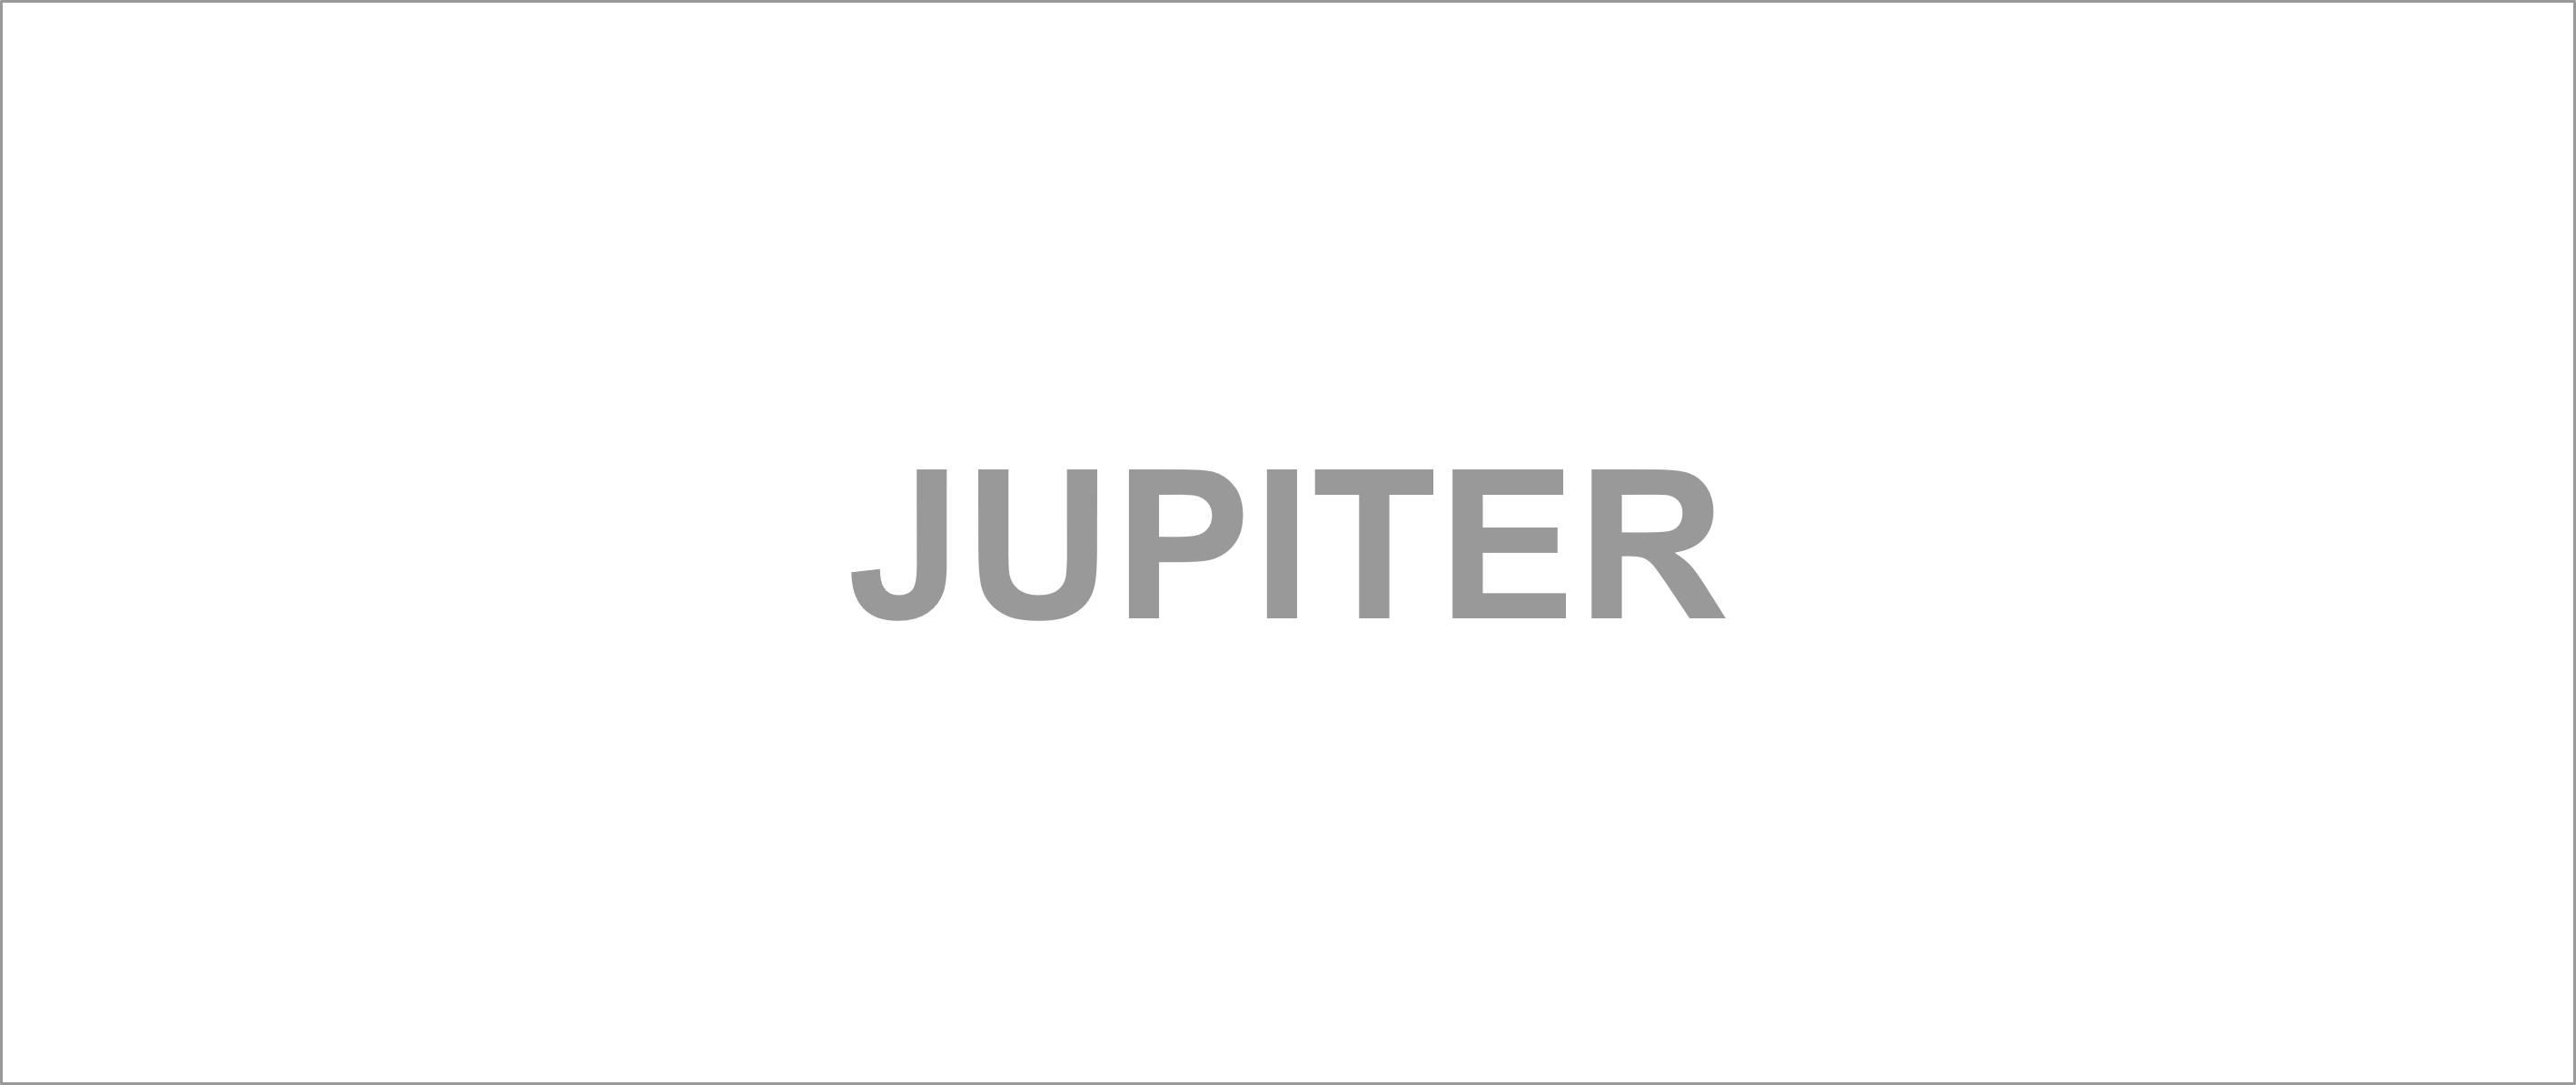 Jupiter water ionisatoren zijn water ionisatoren van hoge kwaliteit met een lange staat van dienst op het gebied van uitstekende prestaties. Ze hebben het extra voordeel dat ze UltraWater-filtratie kunnen gebruiken, de beste filtratie van alle water ionisatoren waar dan ook. Bekende modellen zijn: Jupiter Vesta, Jupiter Delphi (ultra) met kraan, Jupiter Orion, Jupiter Mavello, Jupiter Melody en Jupiter Alphion.